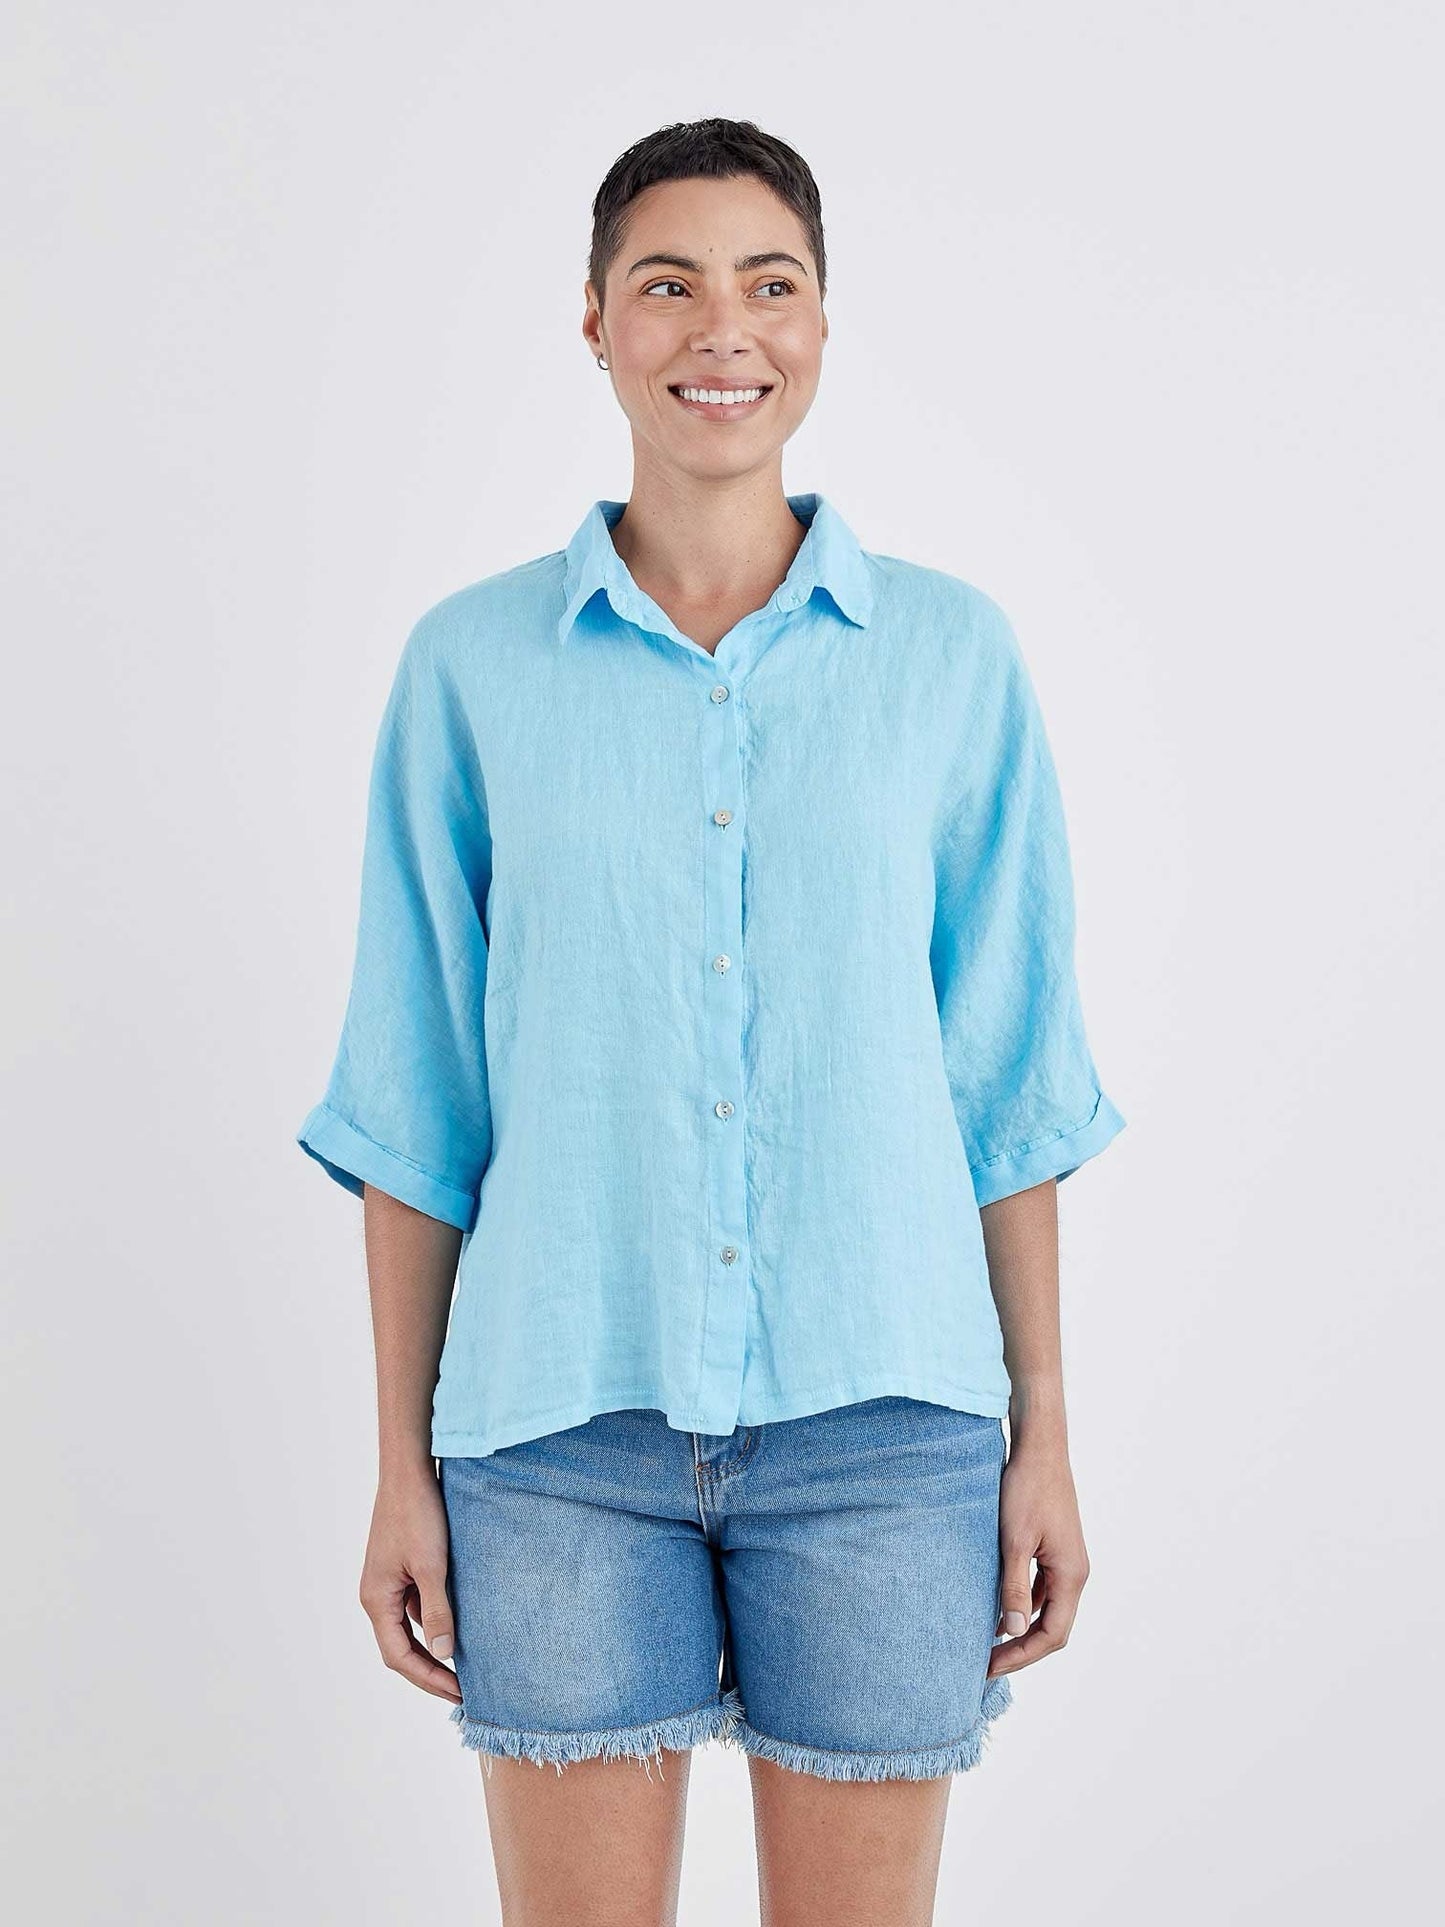 Dolman Sleeve Shirt in Linen Jersey by Cut-Loose